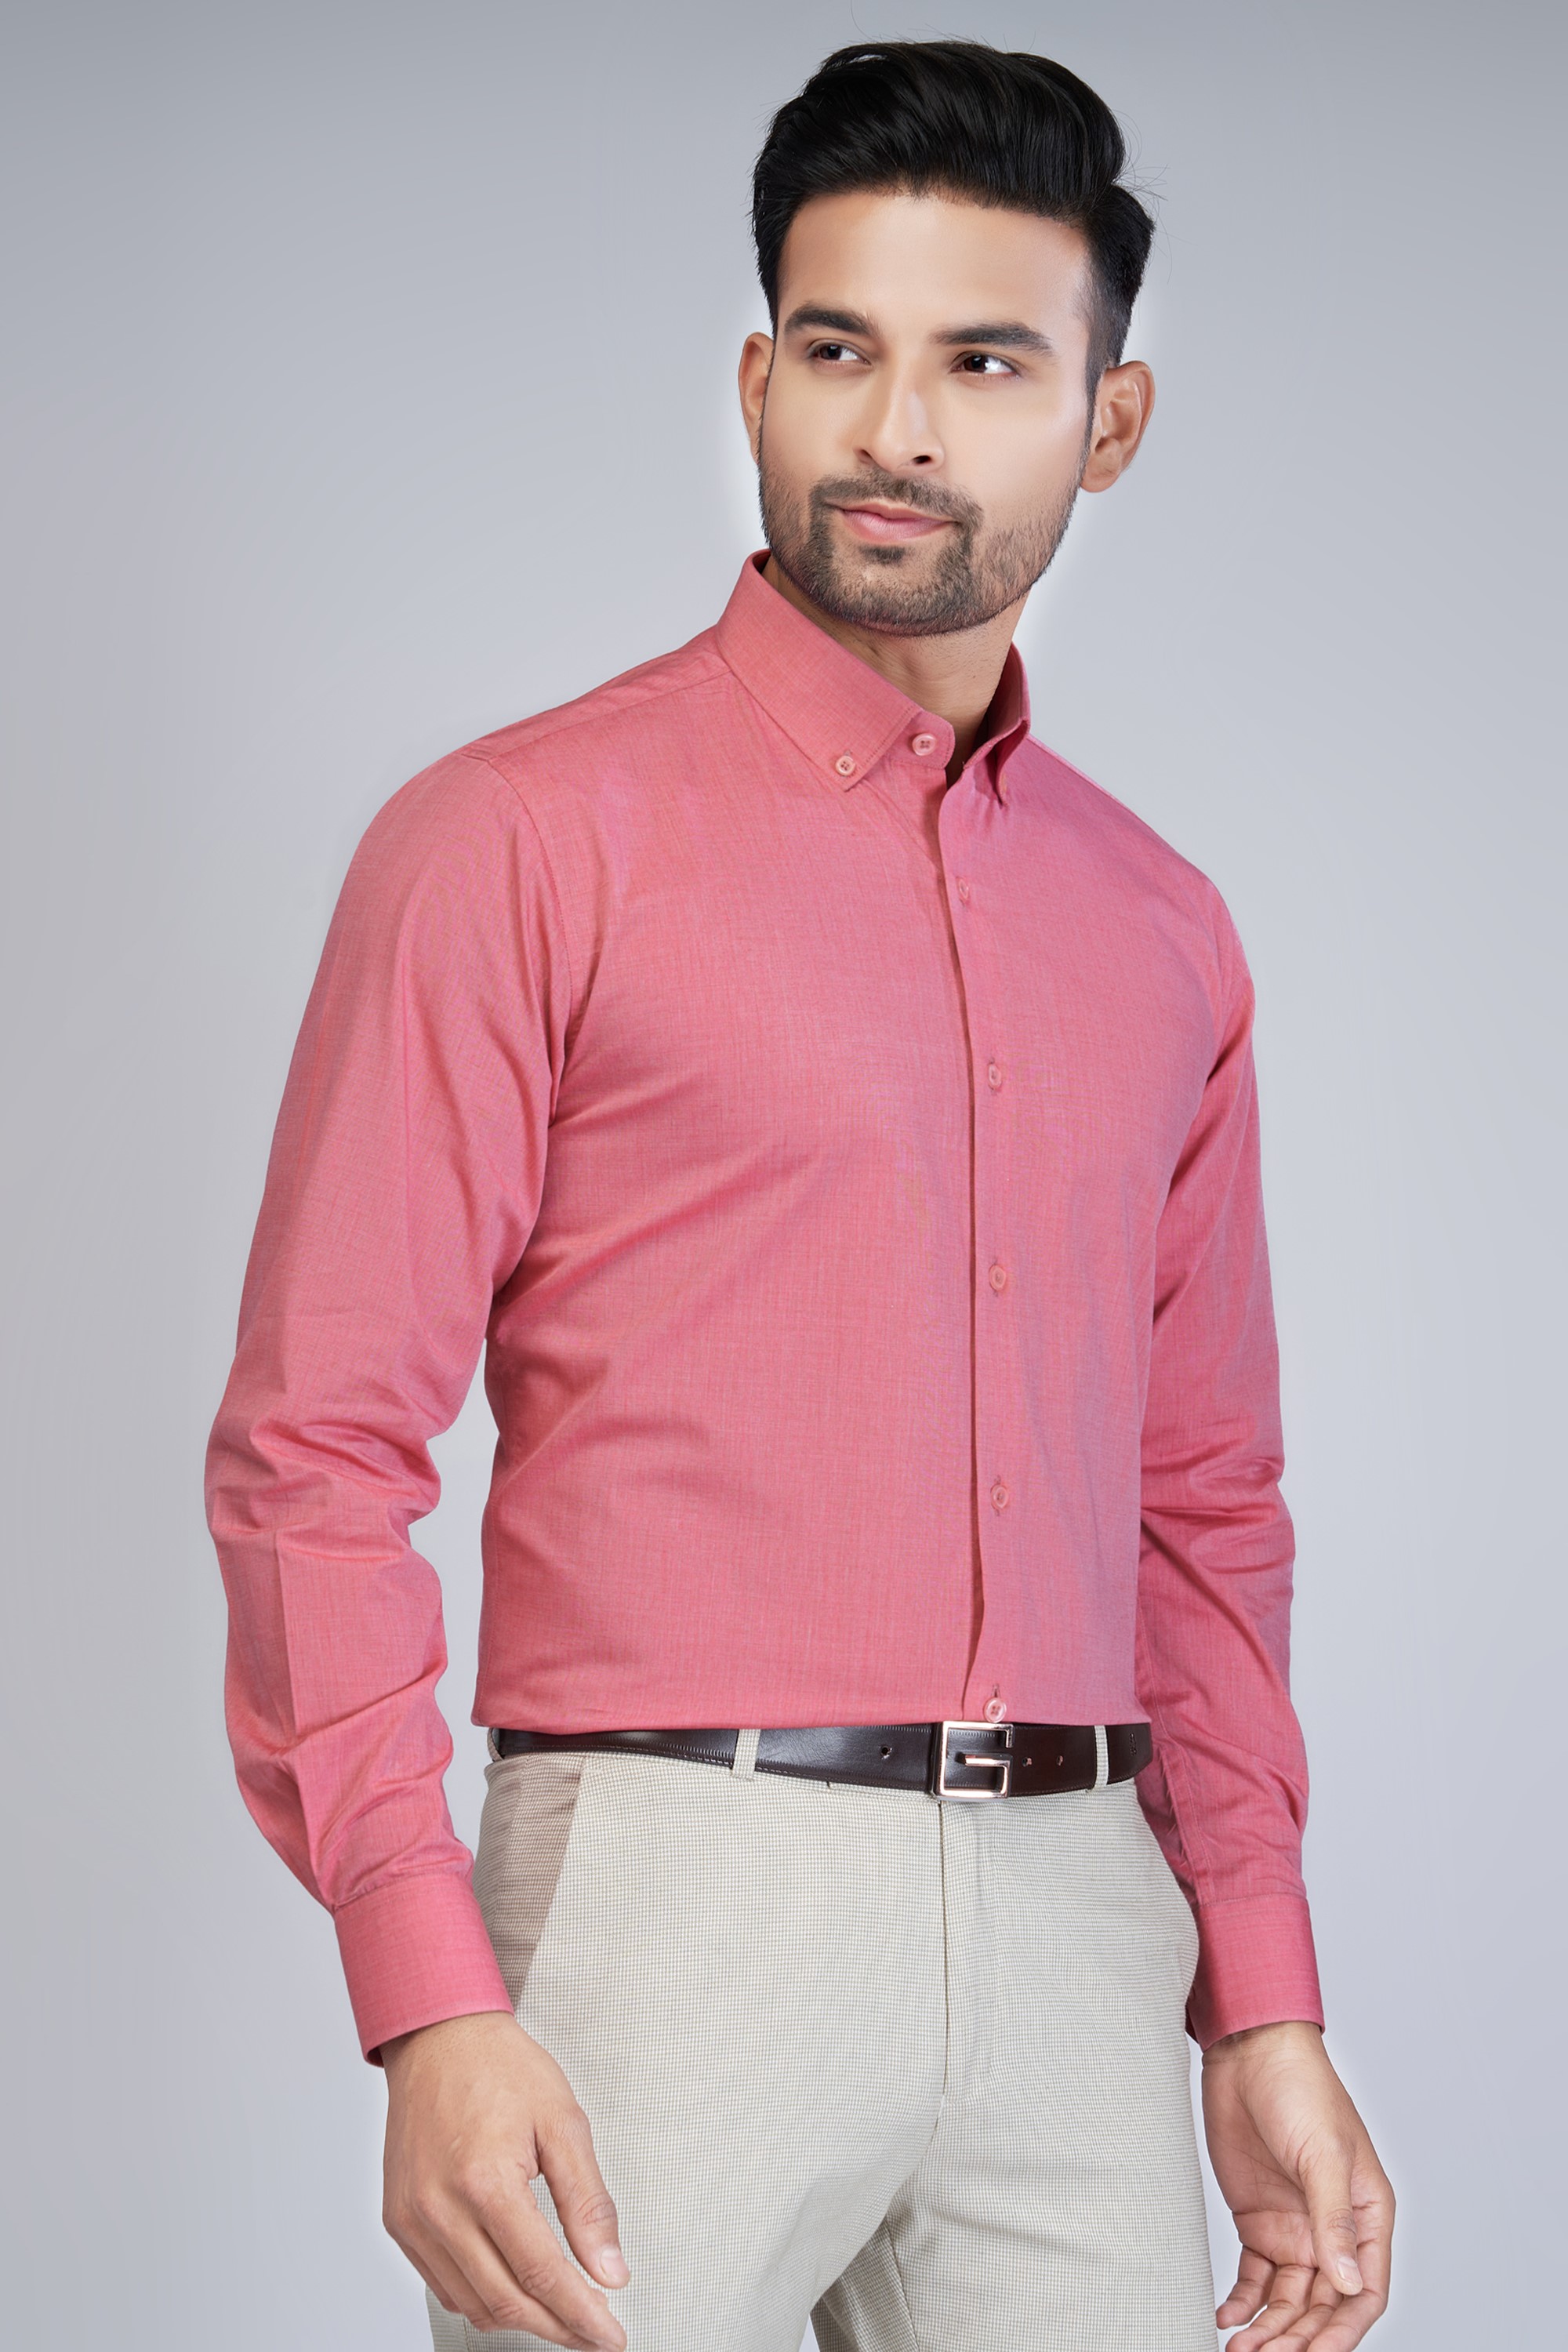 Men's Formal Pink Shirt